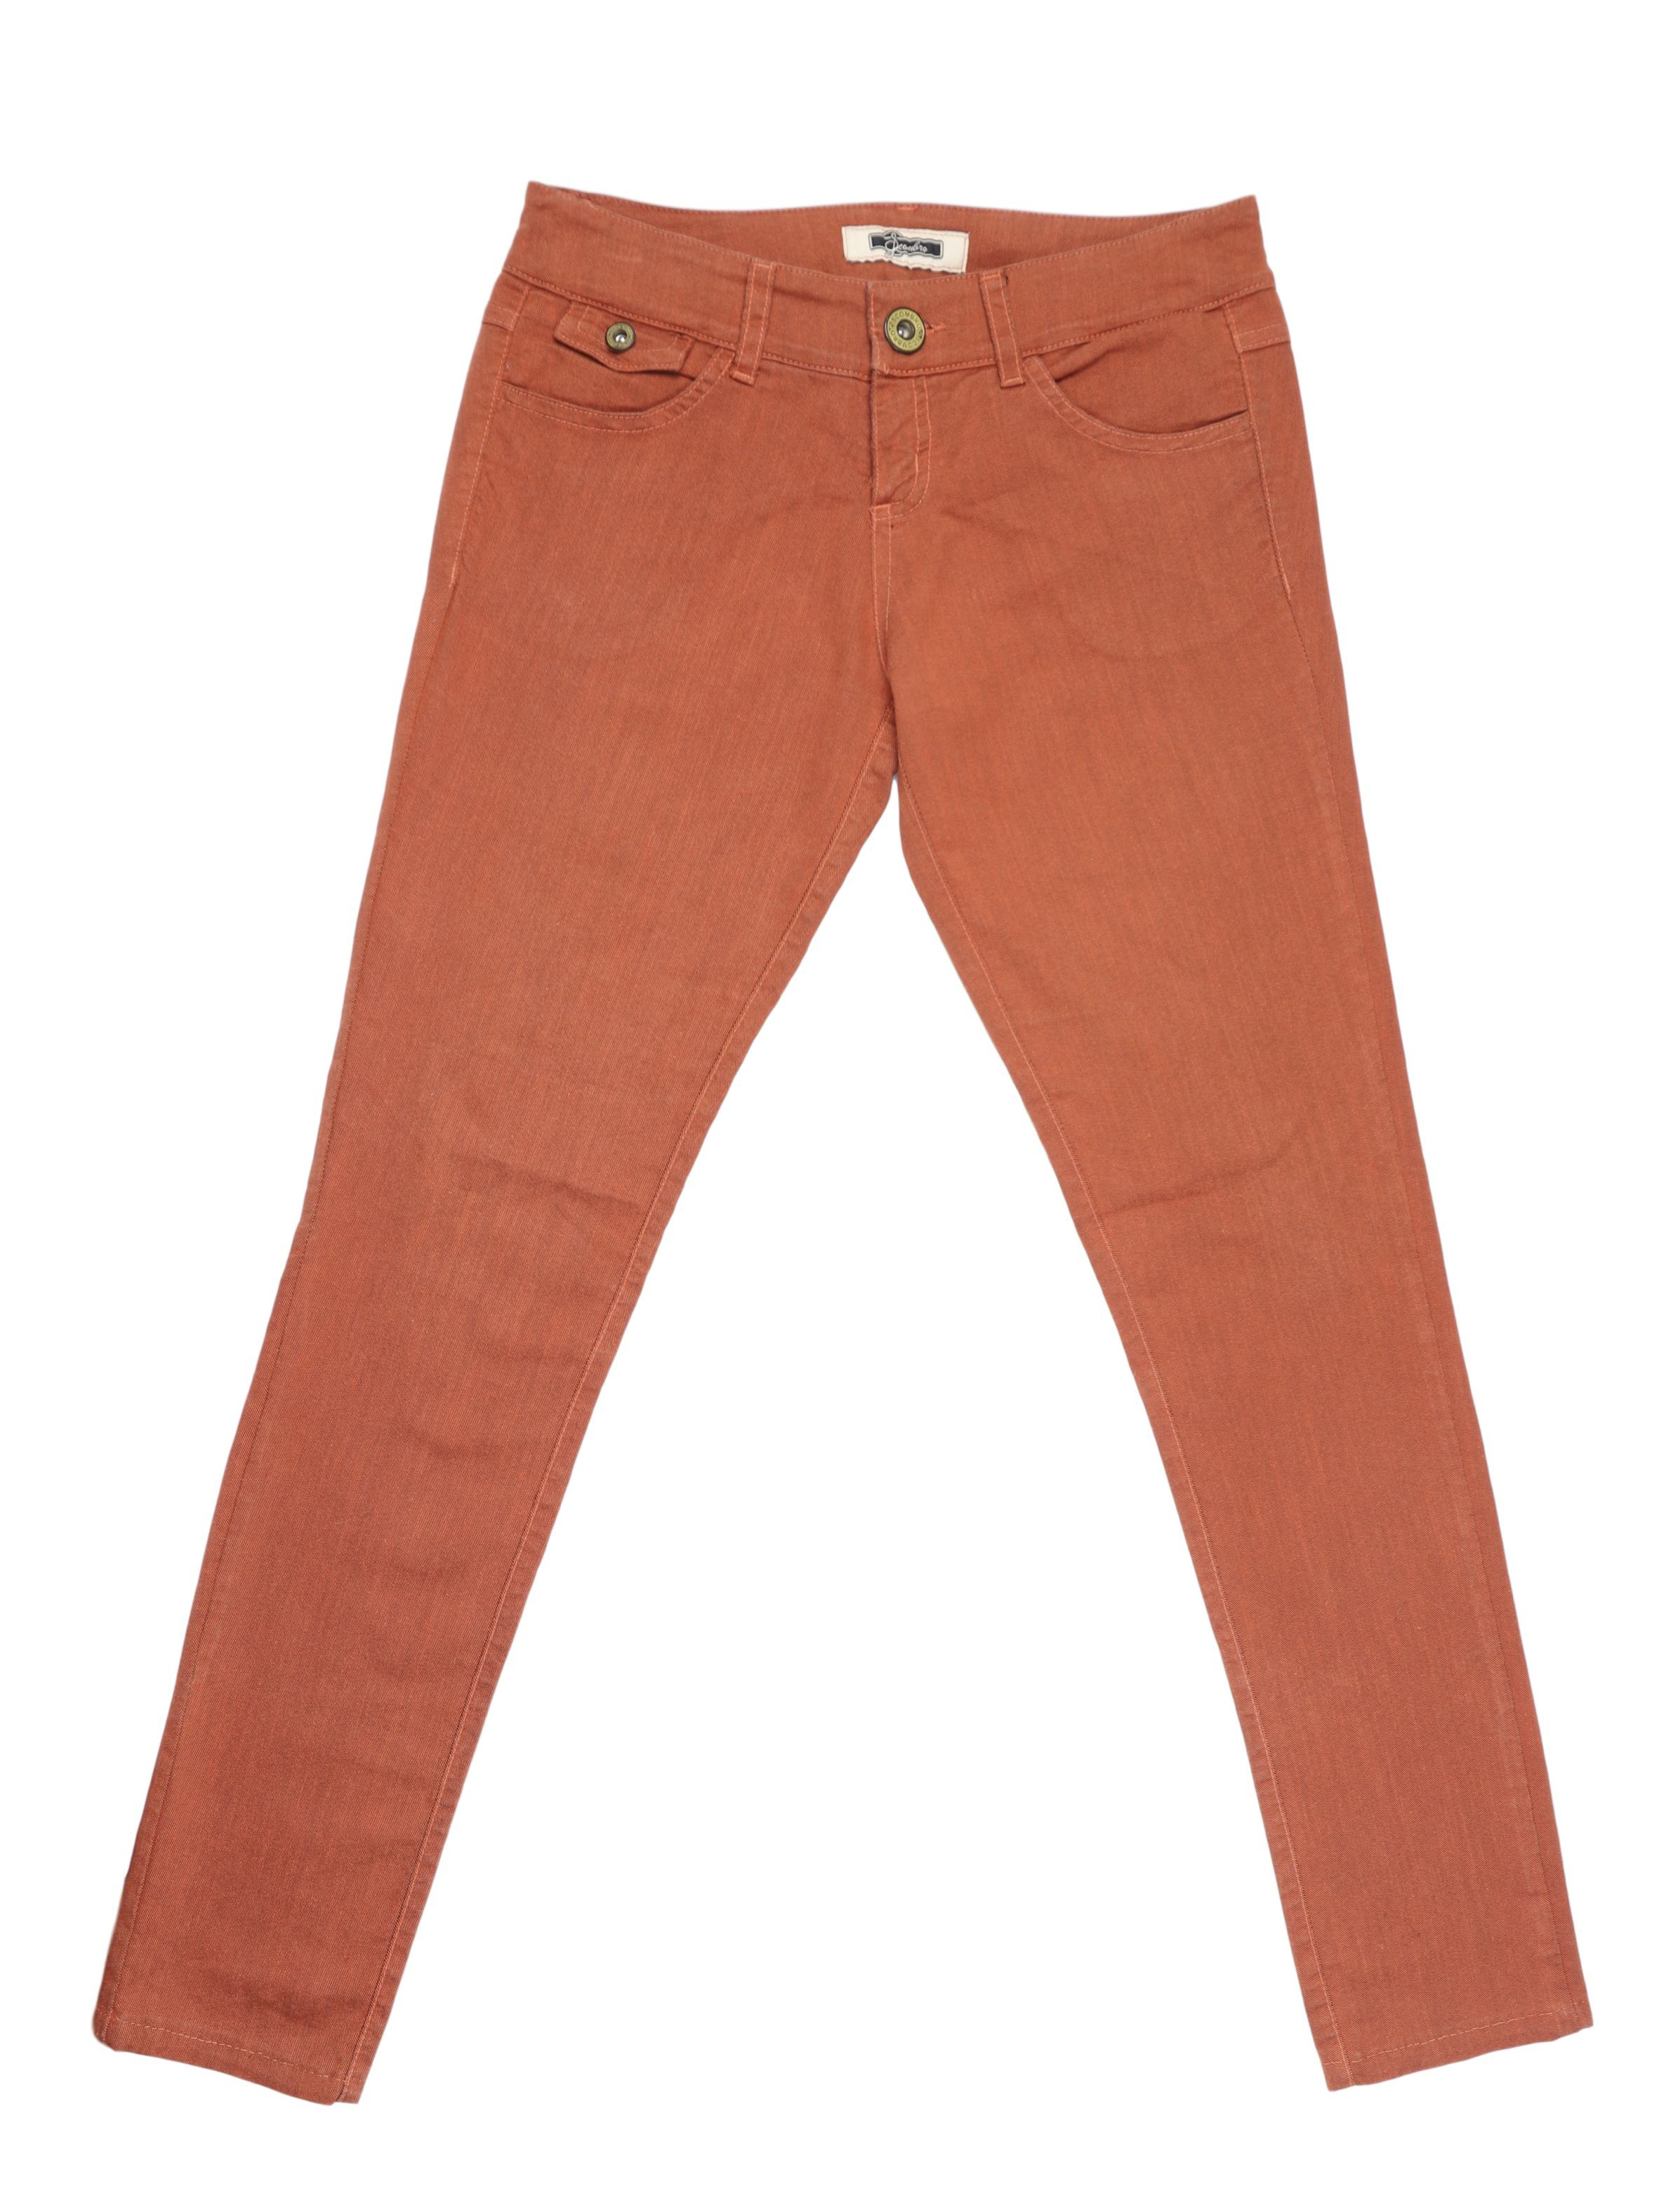 Pantalón denim Scombro, anaranjado, corte pitillo, tiro medio. Pretina 75cm